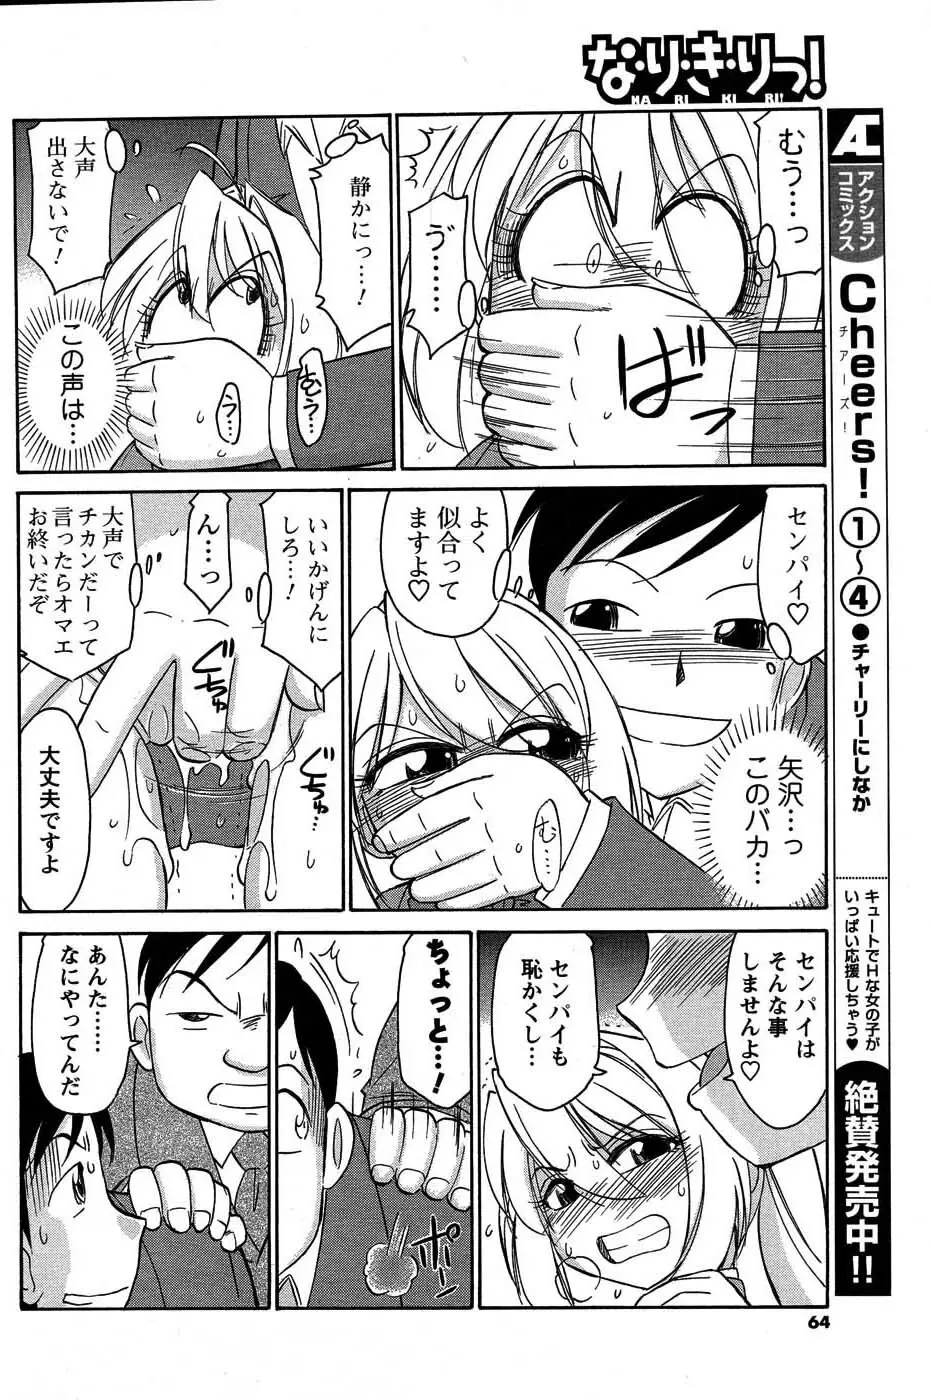 メンズヤングスペシャルIKAZUCHI雷 Vol.3 2007年9月号増刊 63ページ